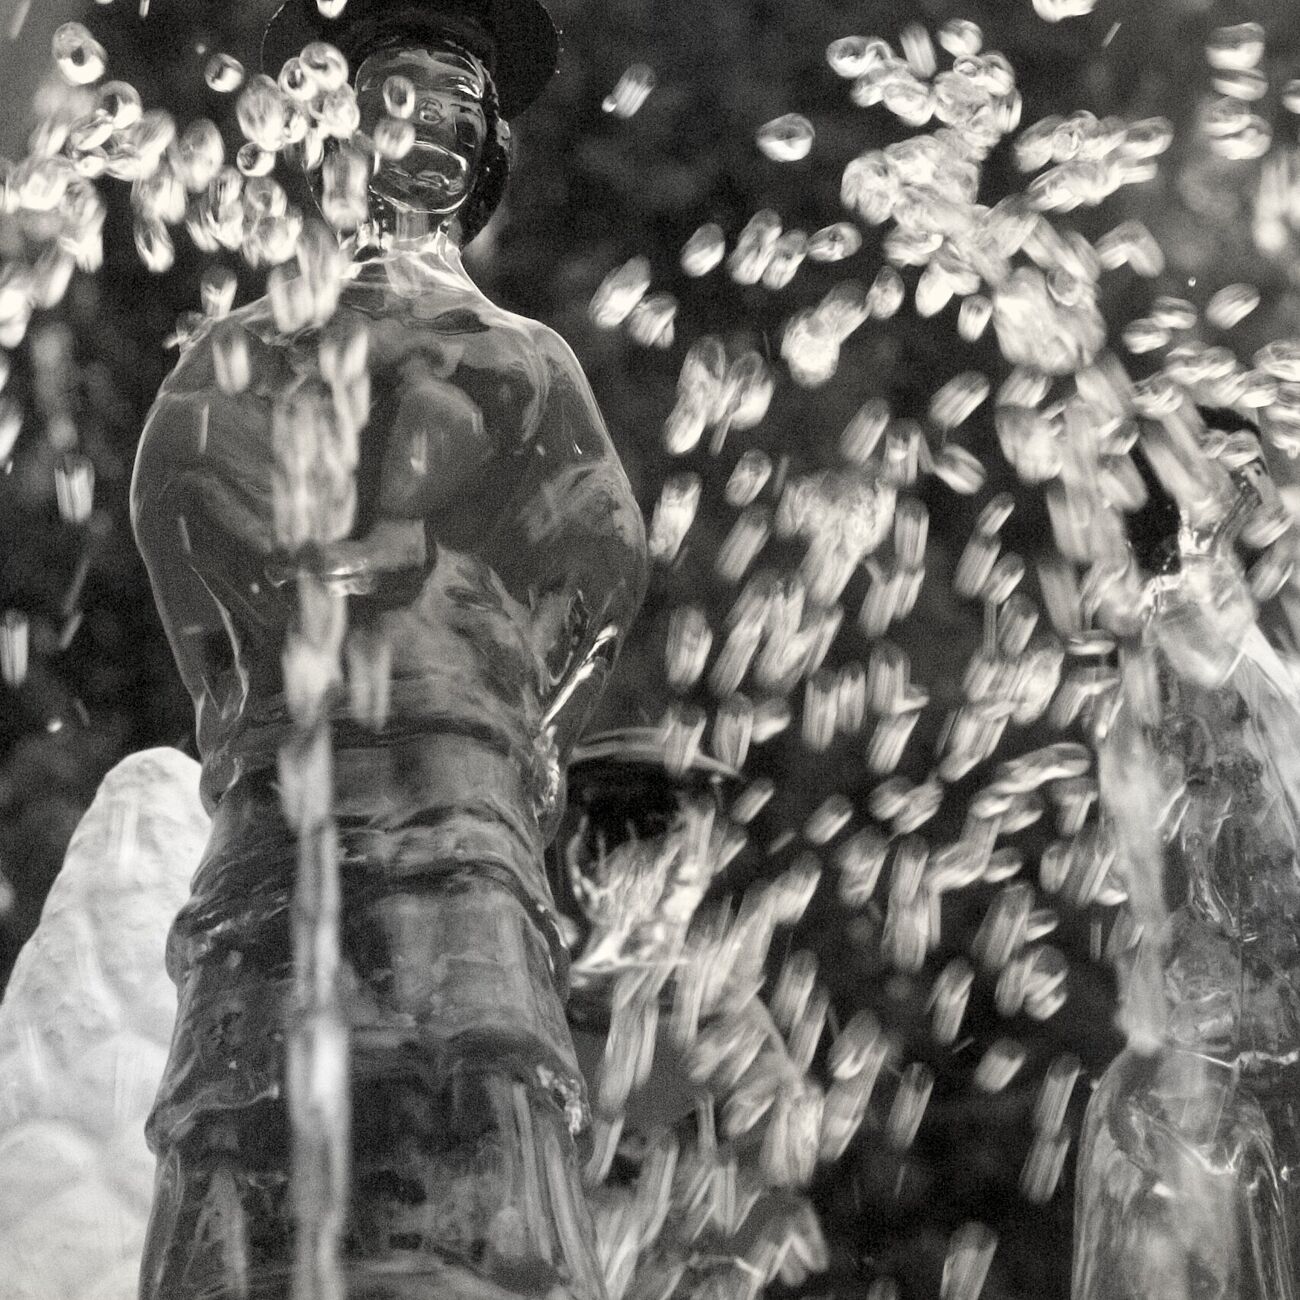 Achat tirage 23 x 23 cm, Sparkling fountain. Ref-459-1 - Denis Olivier Photographie d'Art